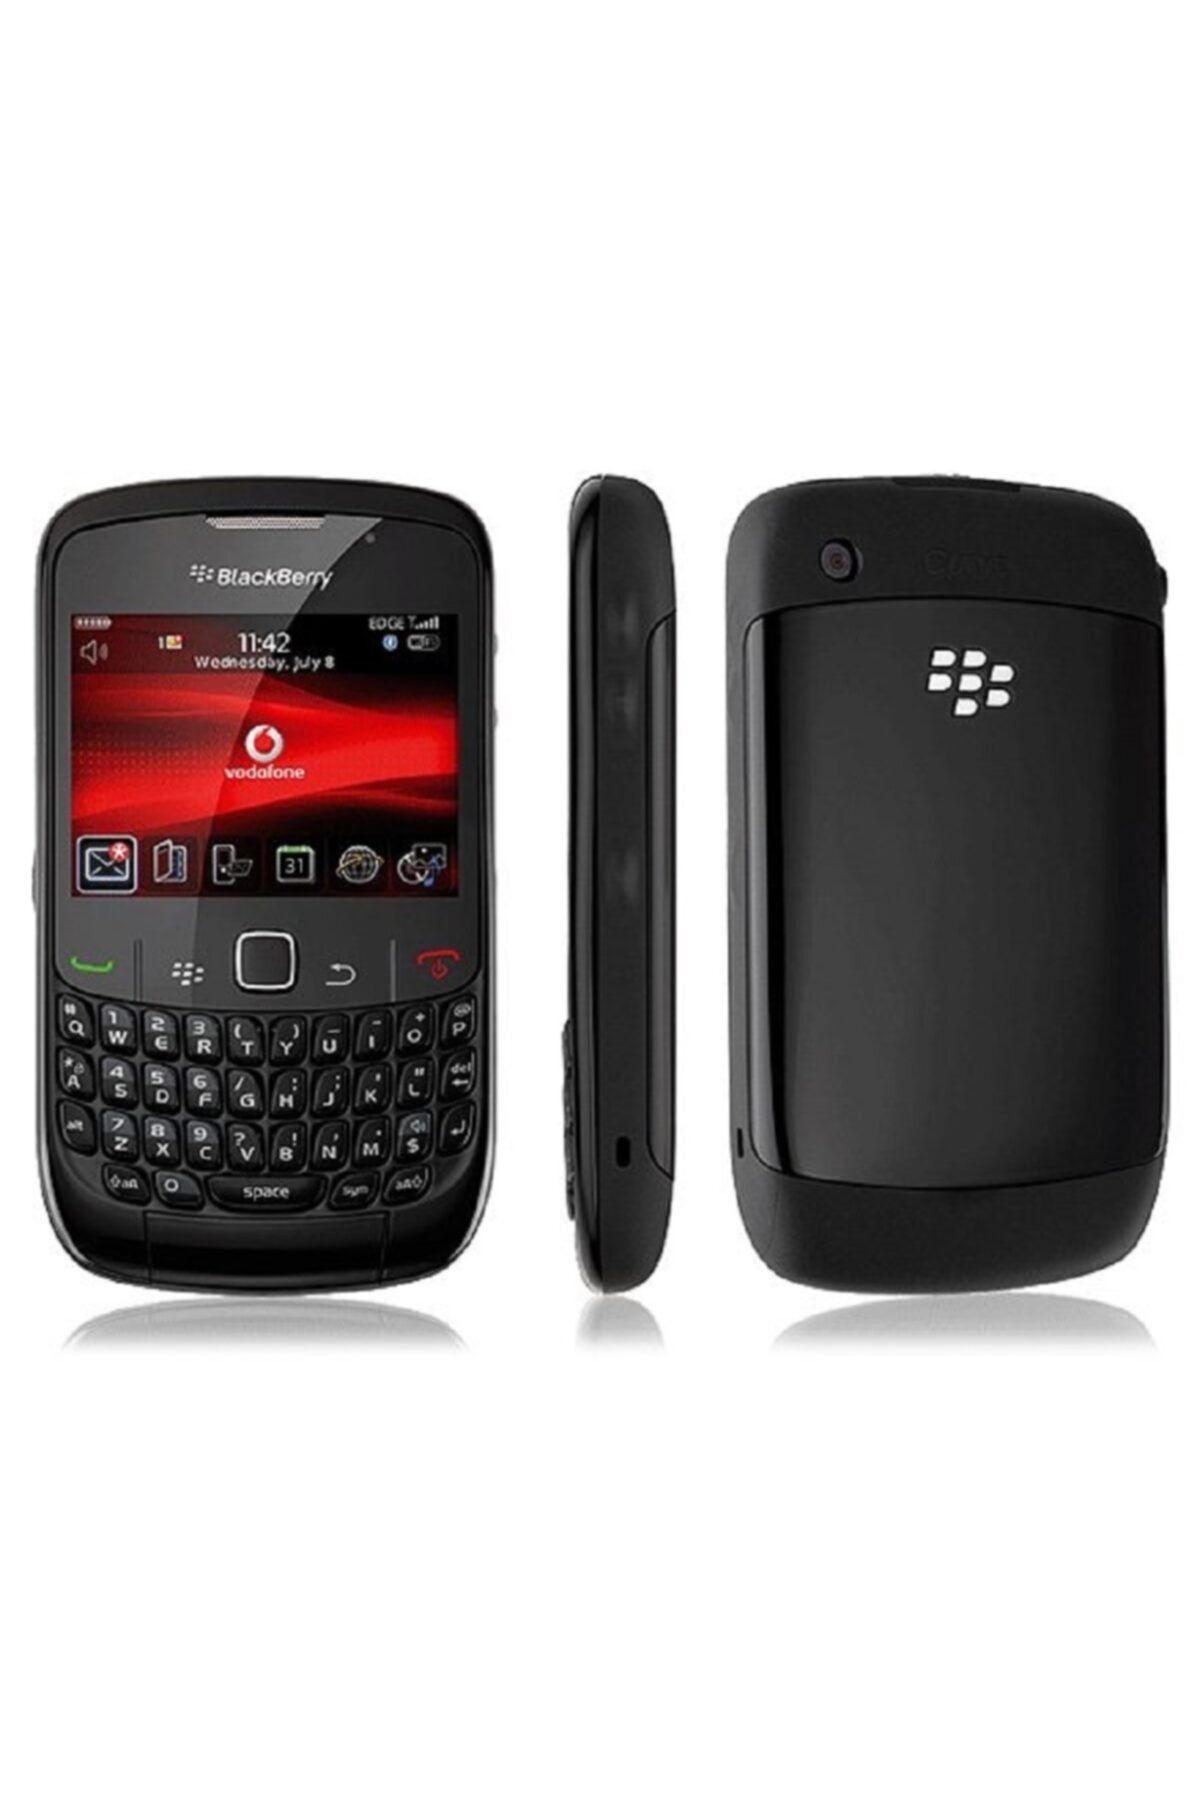 BlackBerry 8520 Curve Orginal Btk Kayıtlı Cihazlar.. 8520 curve